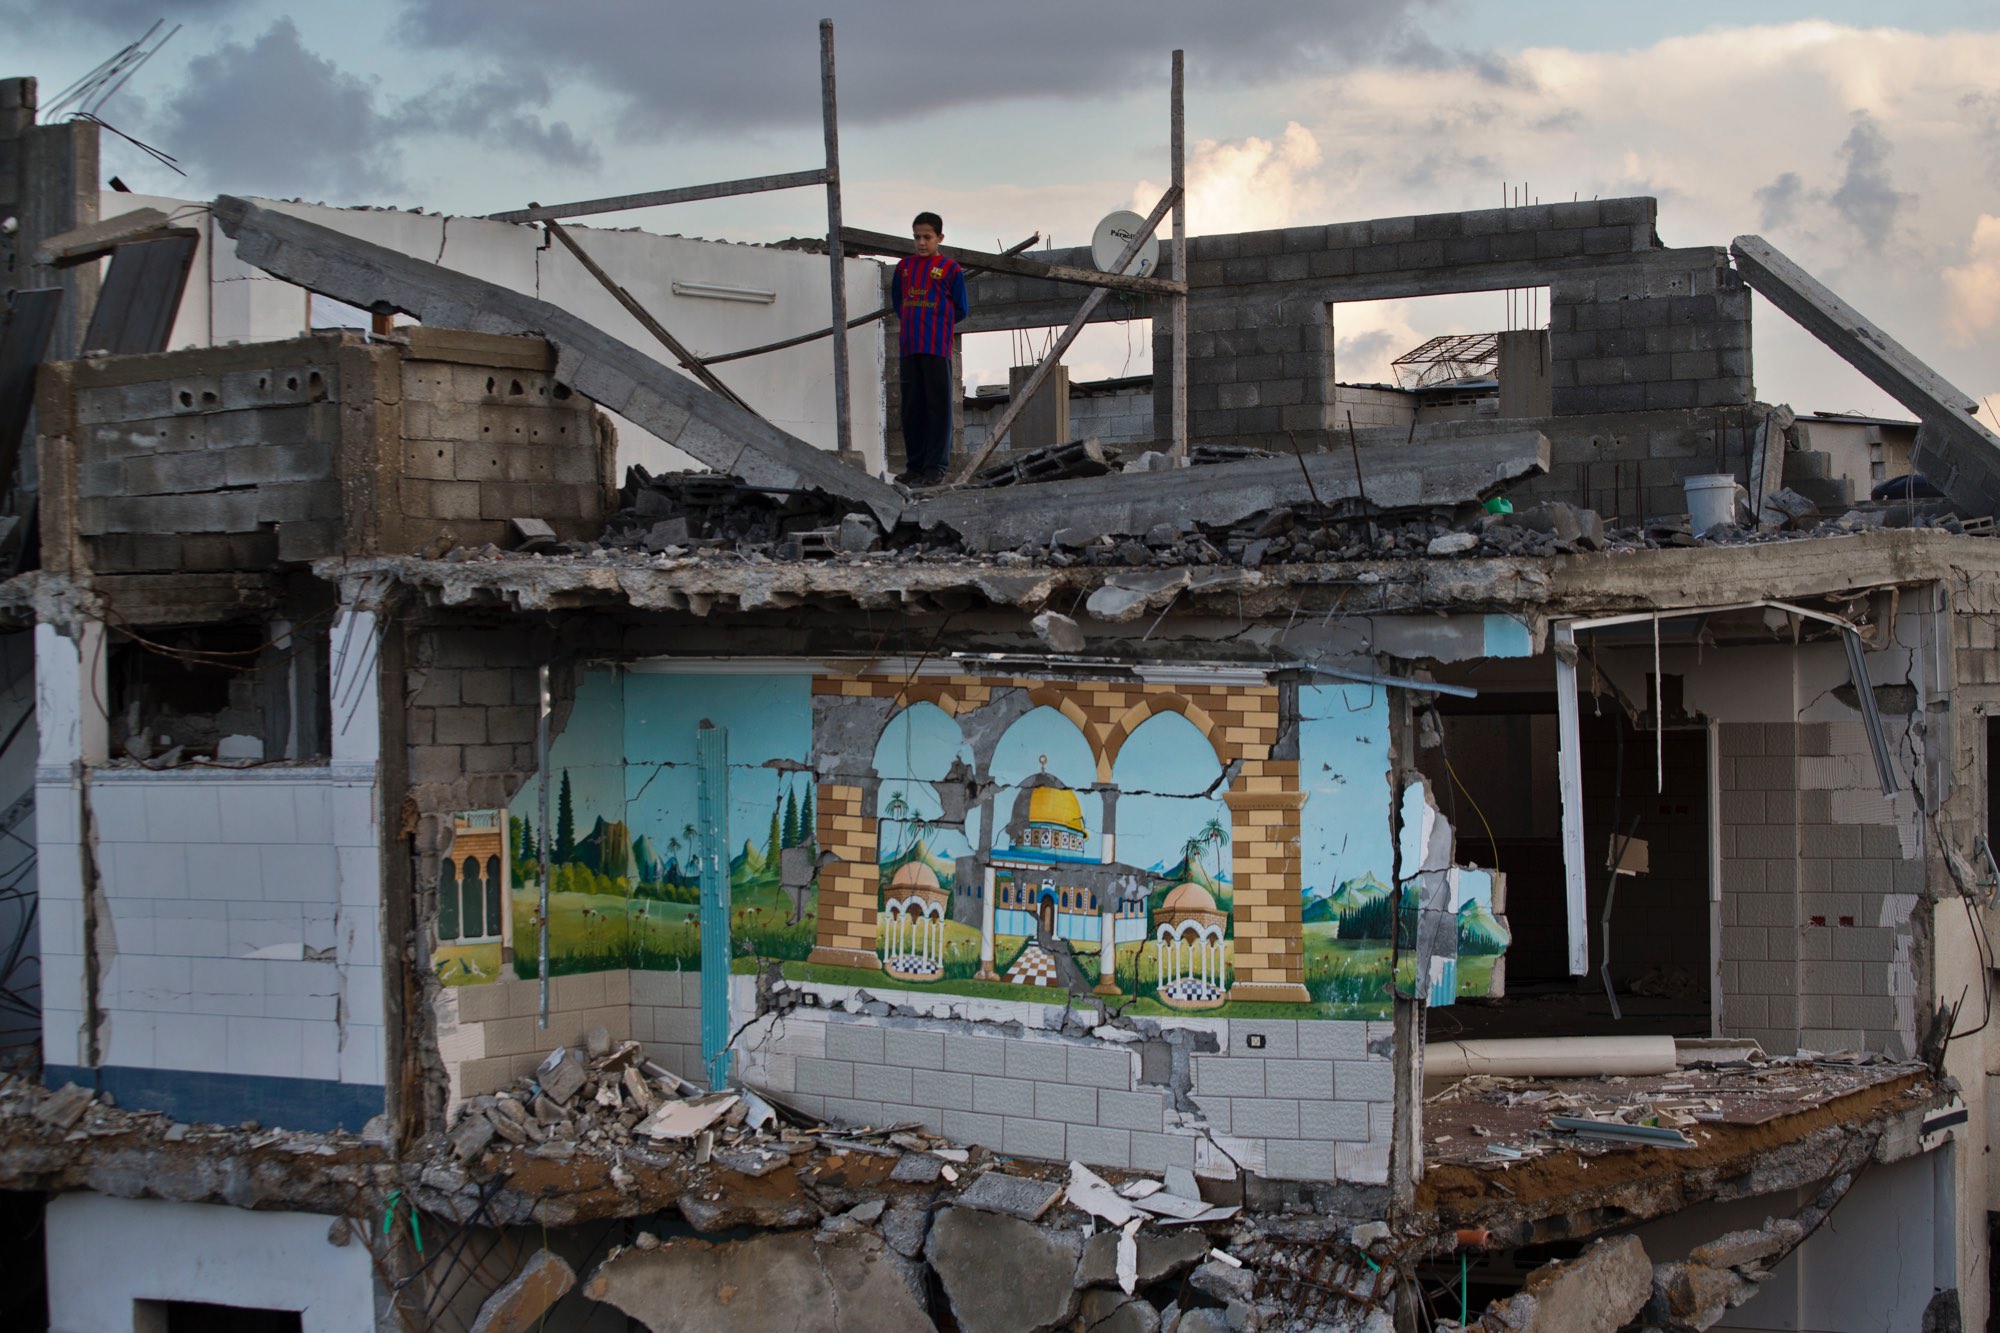 Bernat Armangué. Un nen palestí mira des del terrat d’una casa destruïda a la ciutat de Gaza. Diumenge, 25 de novembre de 2012 (Bernat Armangué/AP). De la sèrie Sobre palestins (esbossos), 2008-2013